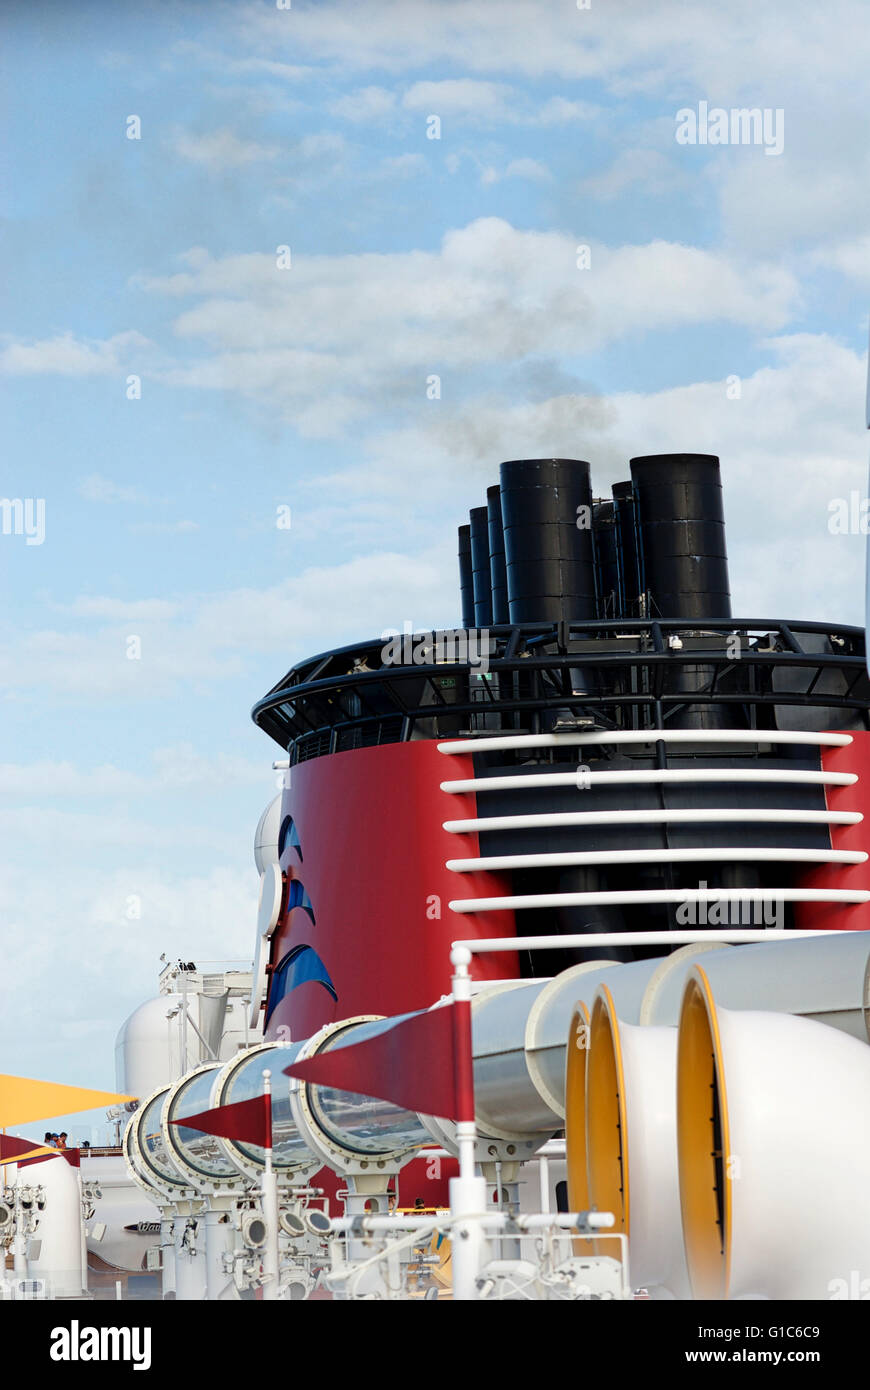 Nahaufnahme Bild der Schornstein von der Disney Dream cruise Schiff und AquaDuck während einer Kreuzfahrt zwischen den USA und den Bahamas. Stockfoto